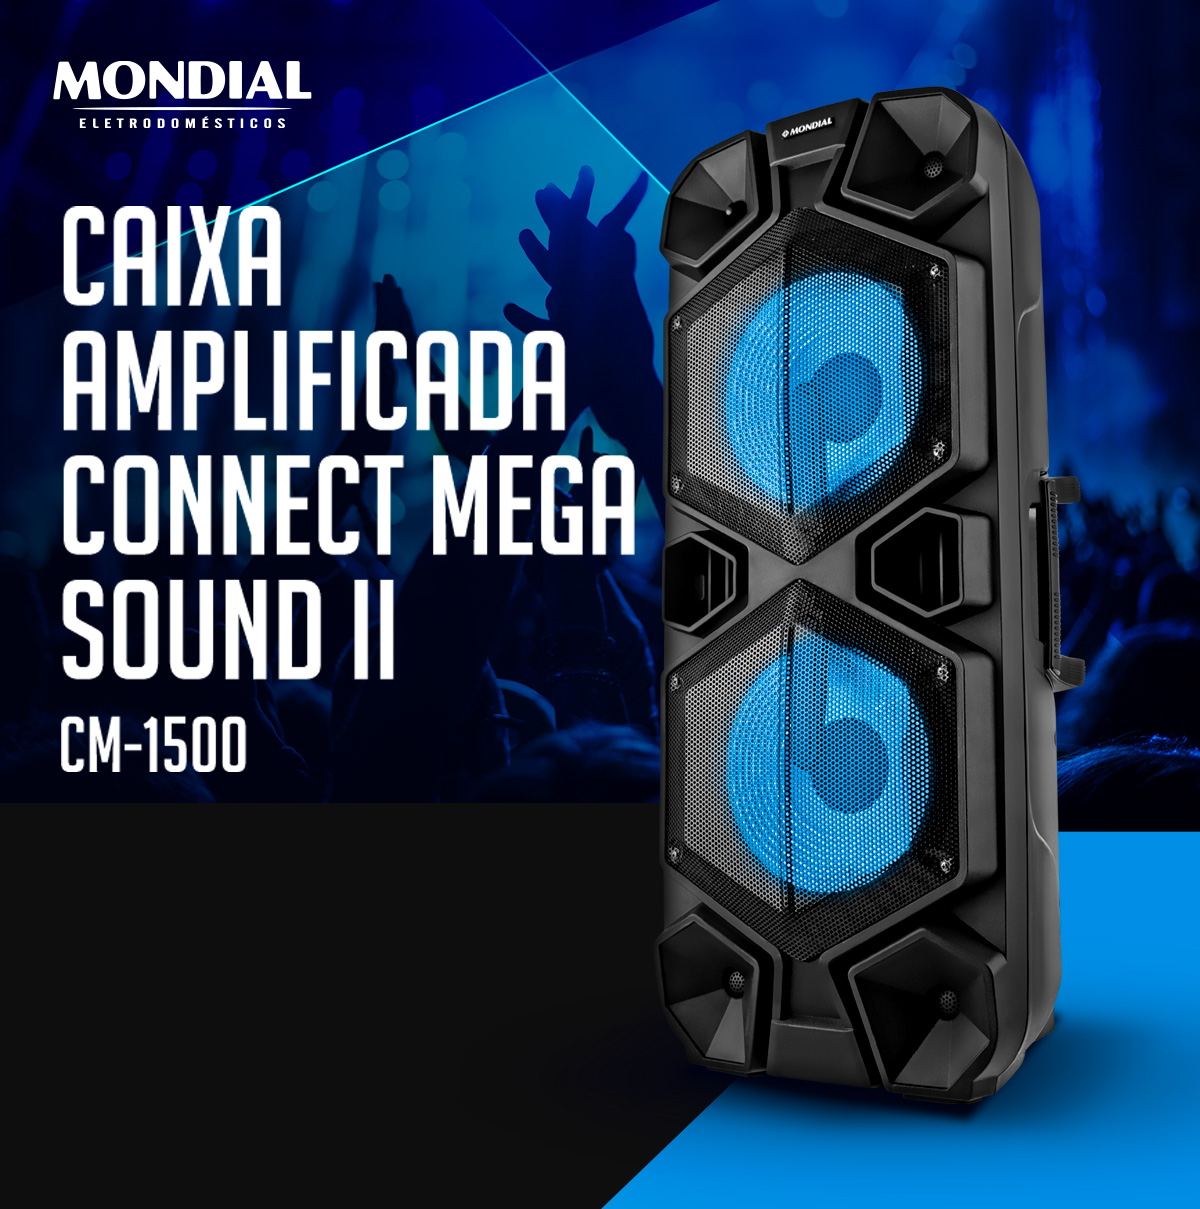 Caixa amplificada connect mega sound II CM-1500. Mondial Eletrodomésticos.